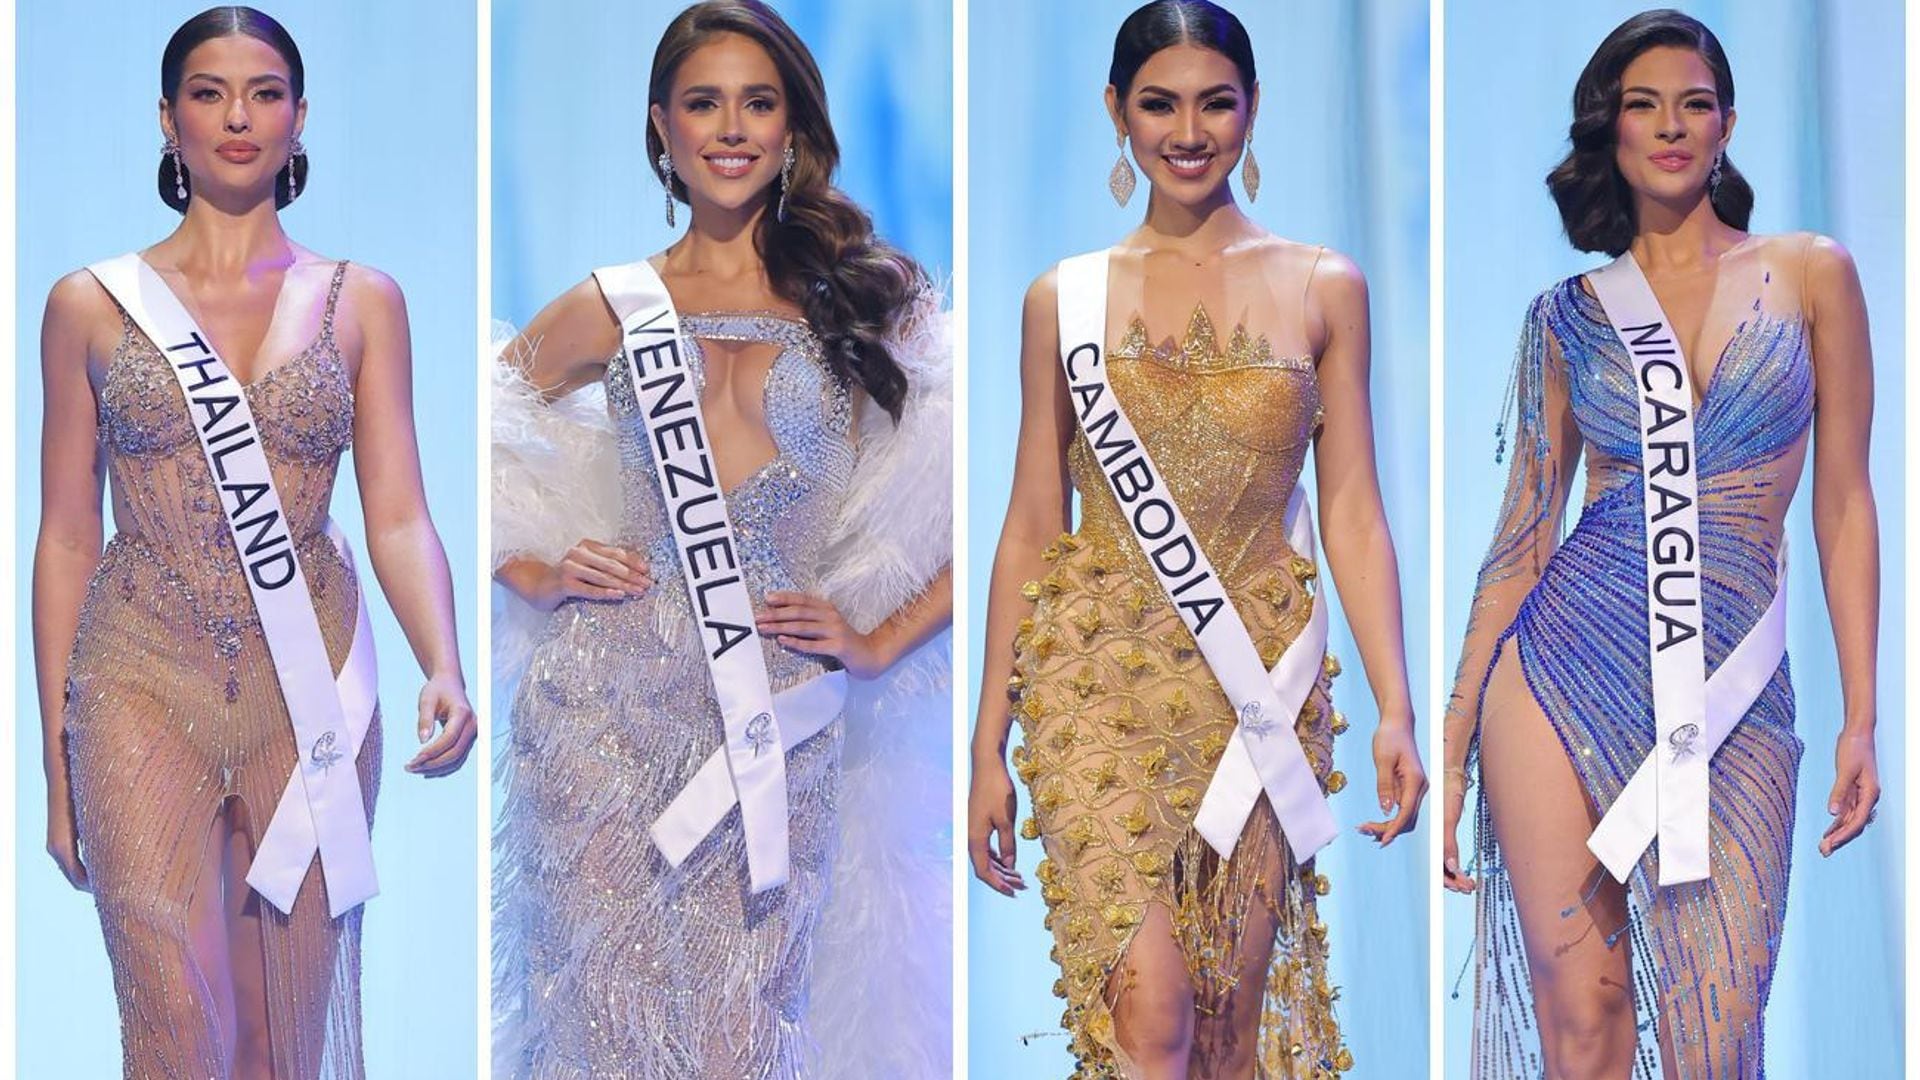 ¡Aquí está la corona! Estas son las candidatas favoritas a reinas de Miss Universe 2023